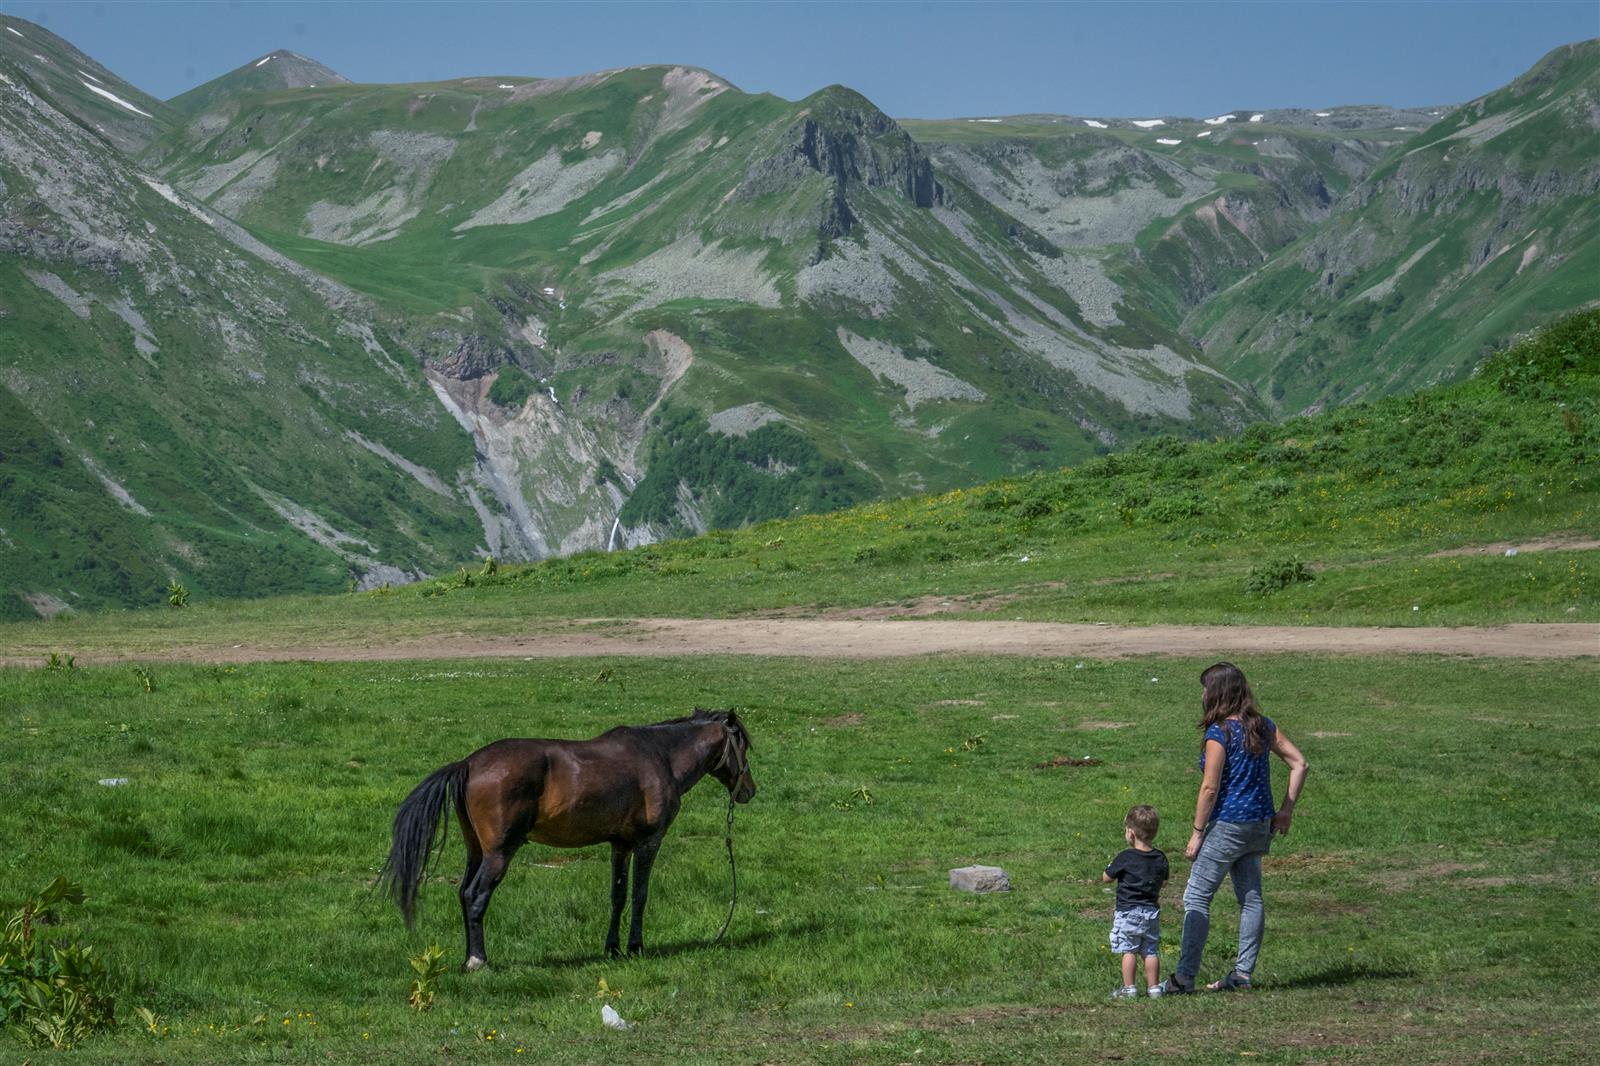 גם משפחות אוהבות לטייל כאן. גודאורי, גאורגיה (צילום: איתמר קוטלר) (צילום: איתמר קוטלר)